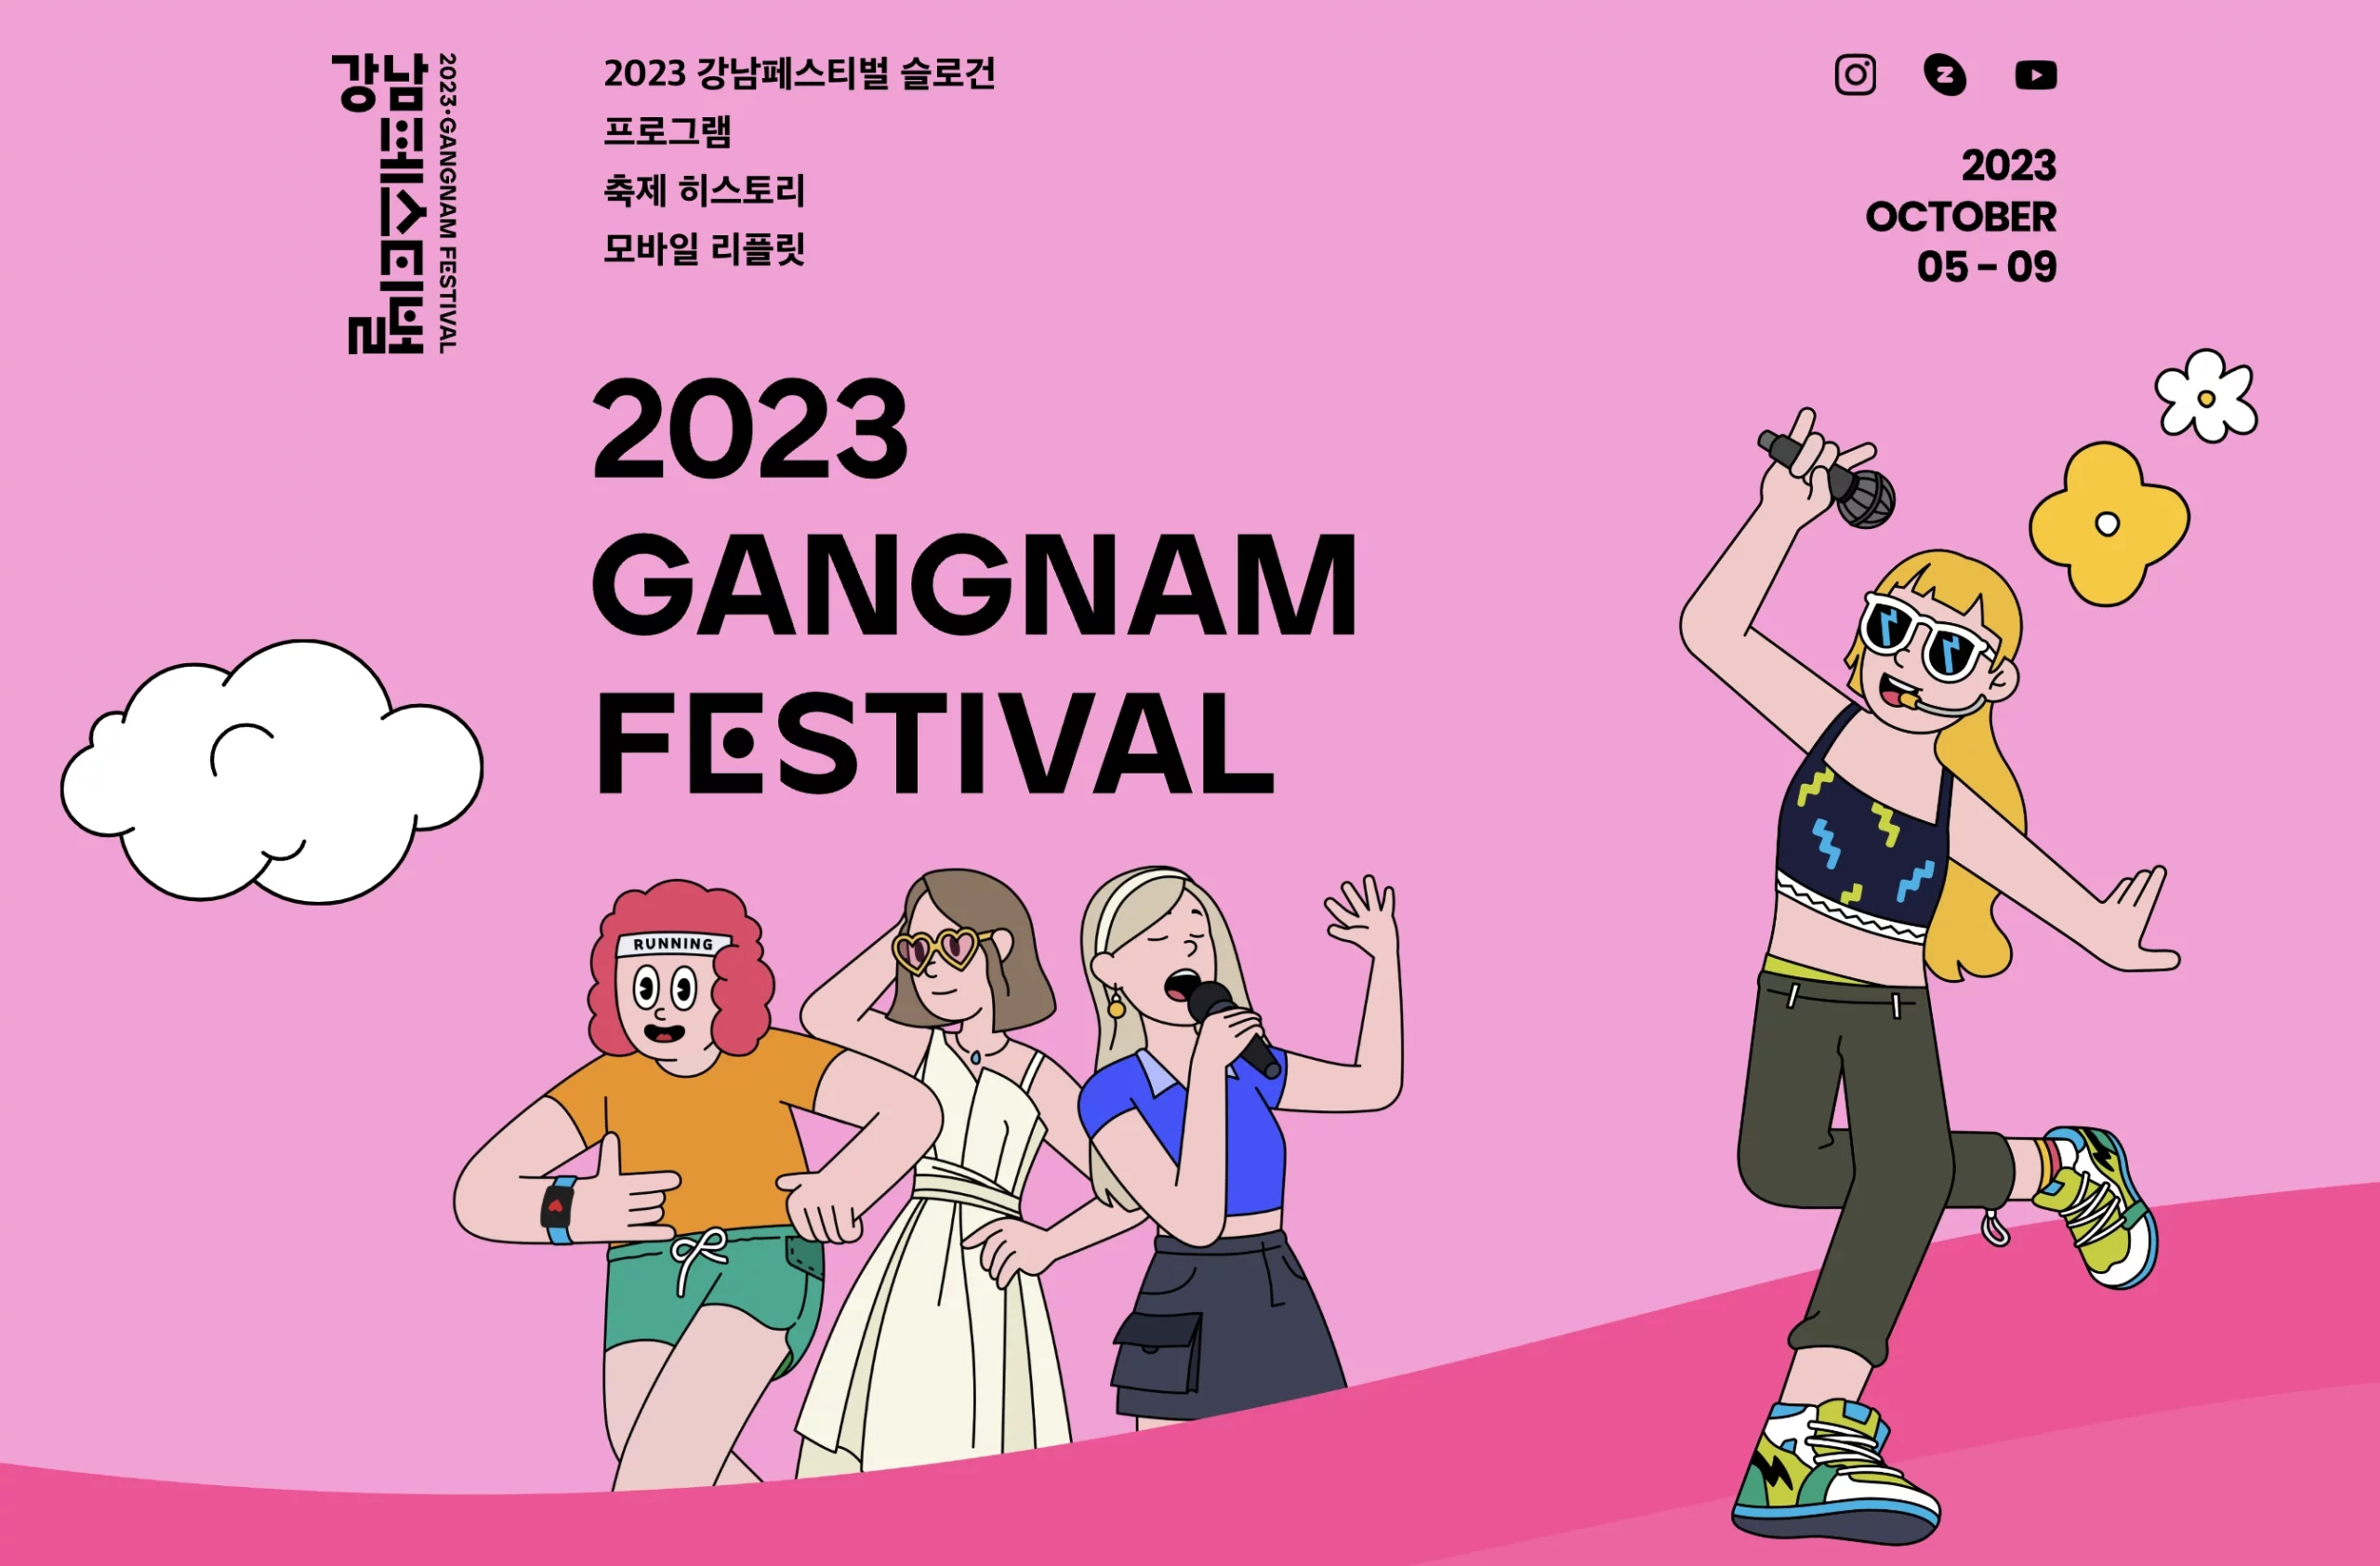 2023-gangnam-festival-in-seoul-main-poster